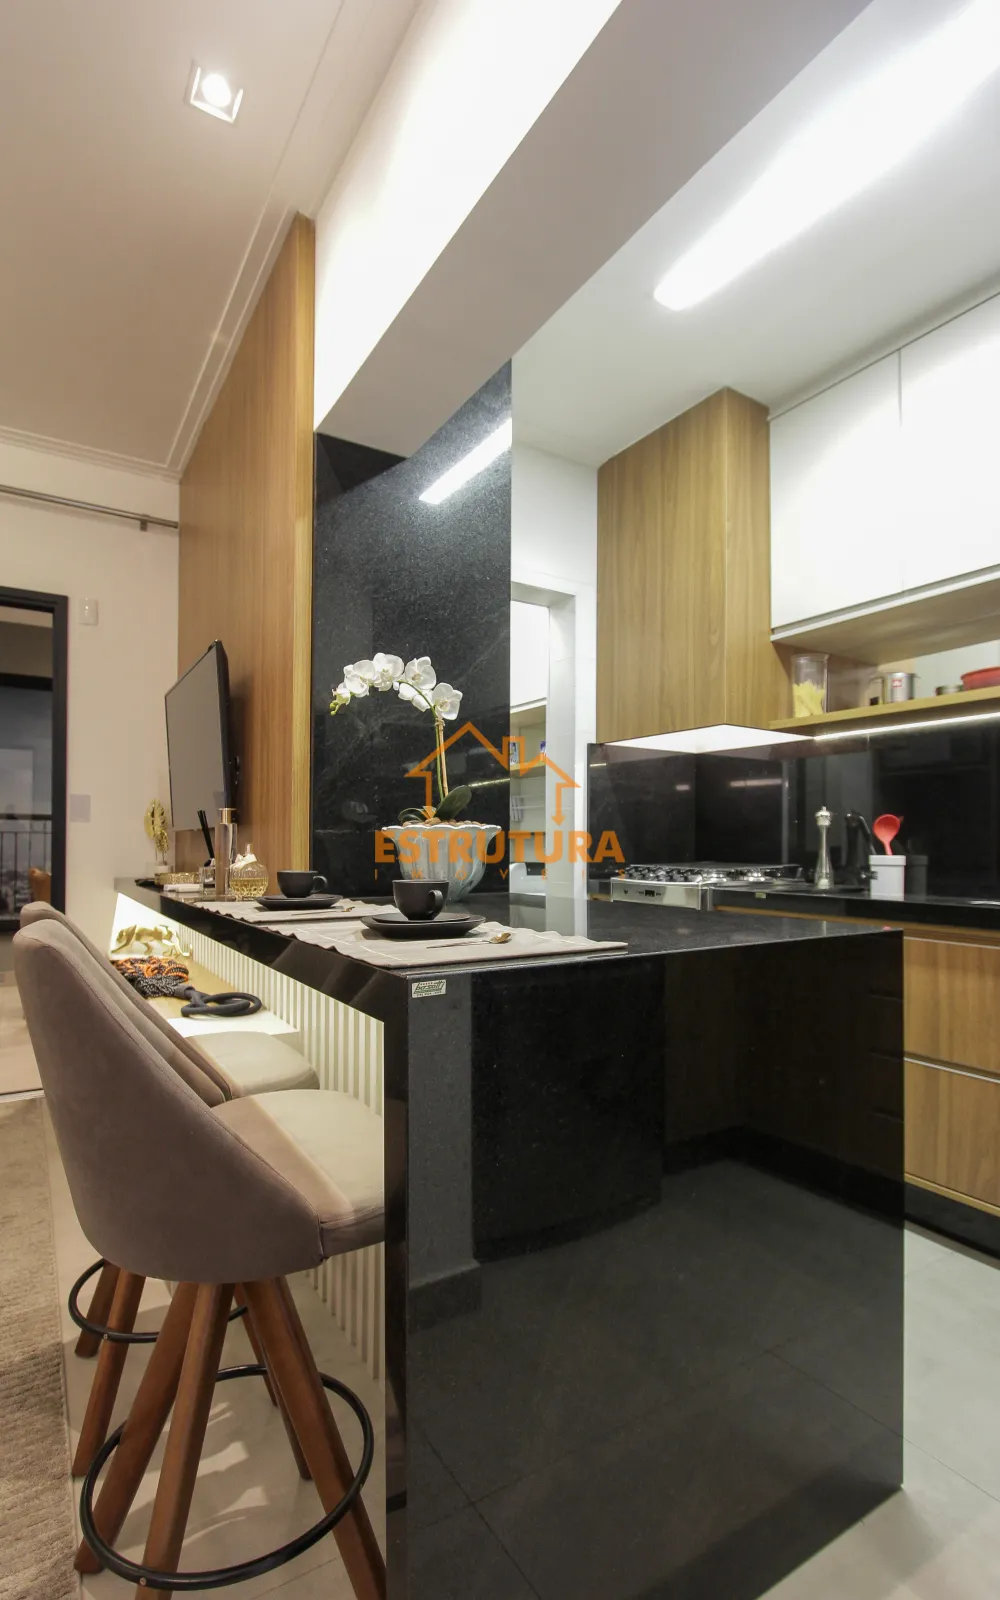 Comprar Residencial / Apartamento em Rio Claro - Foto 4